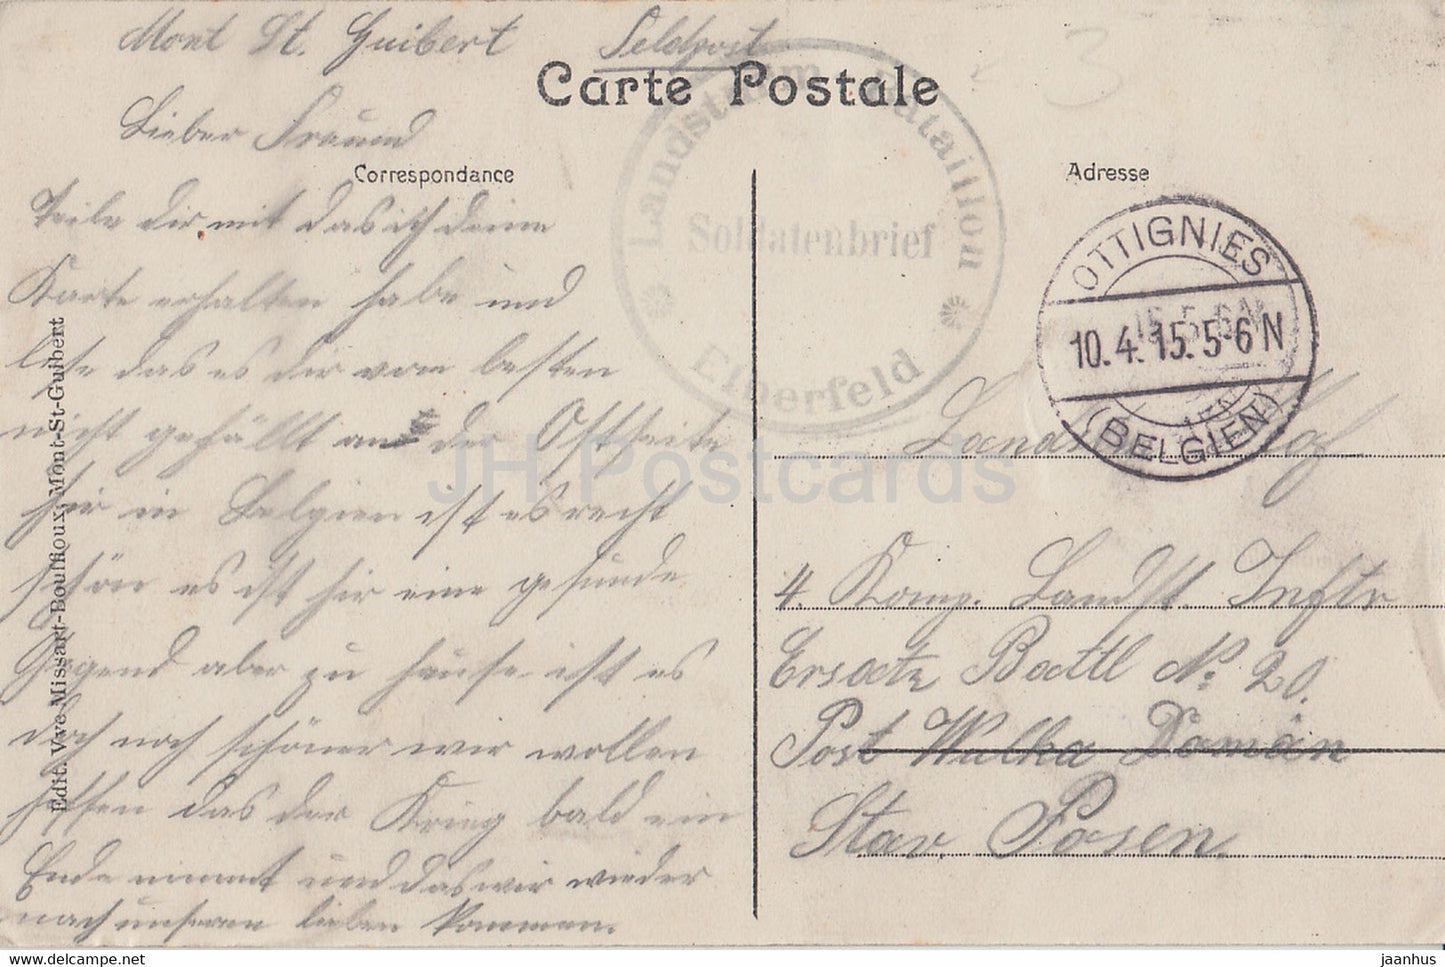 Mont St Guibert - Etang du Chateau de Bierbais - Schloss - Landsturm - Feldpost - alte Postkarte - 1915 - Belgien - gebraucht